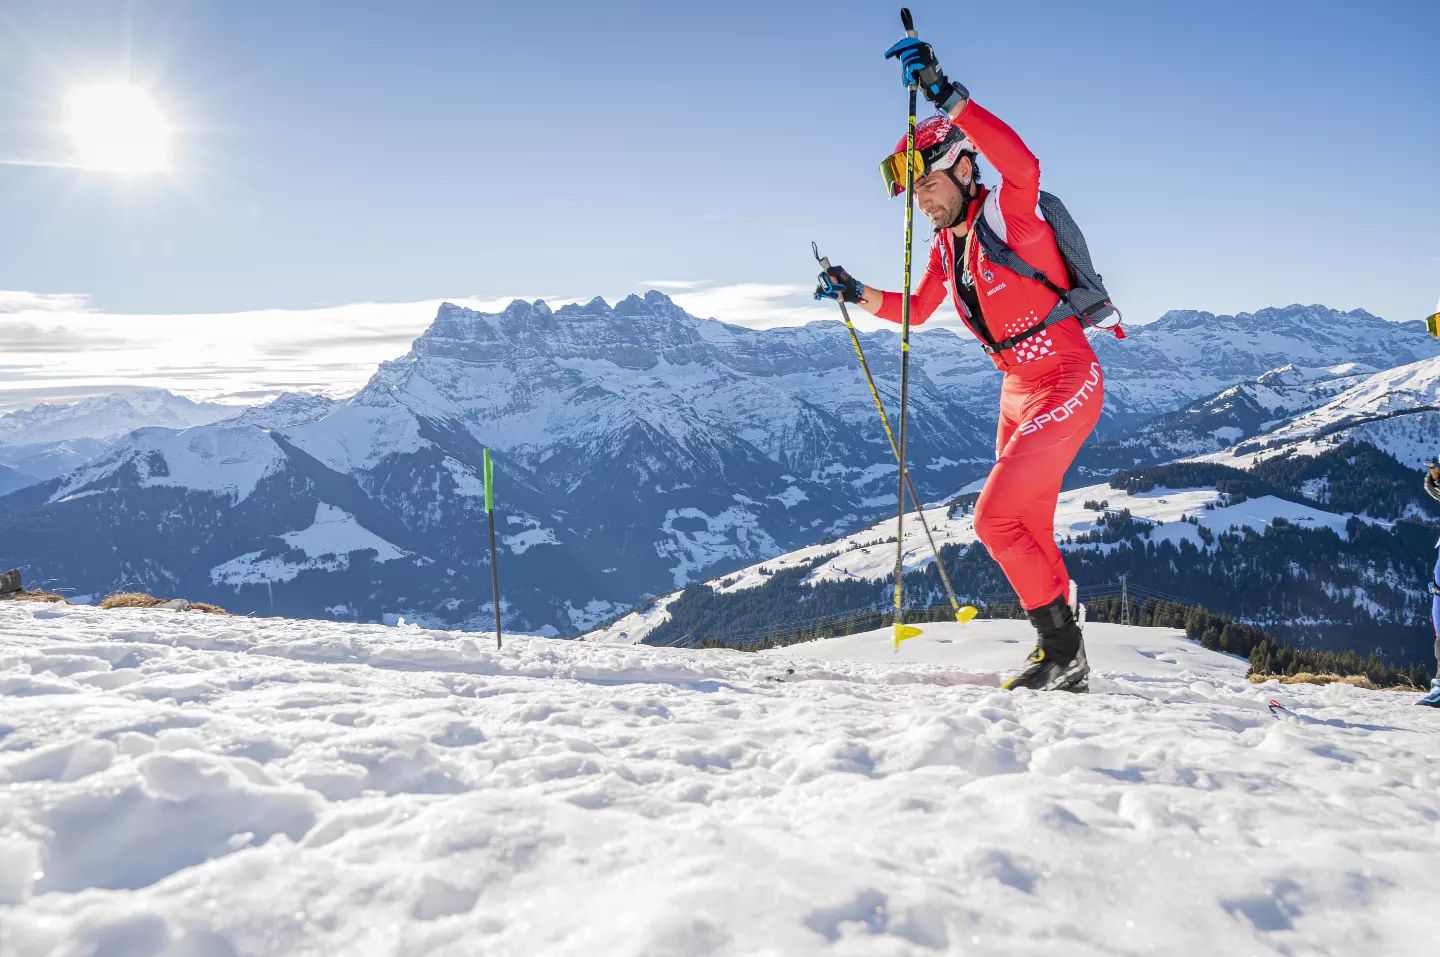 Ski alpinisme: Morgins espère accueillir les Mondiaux en 2025